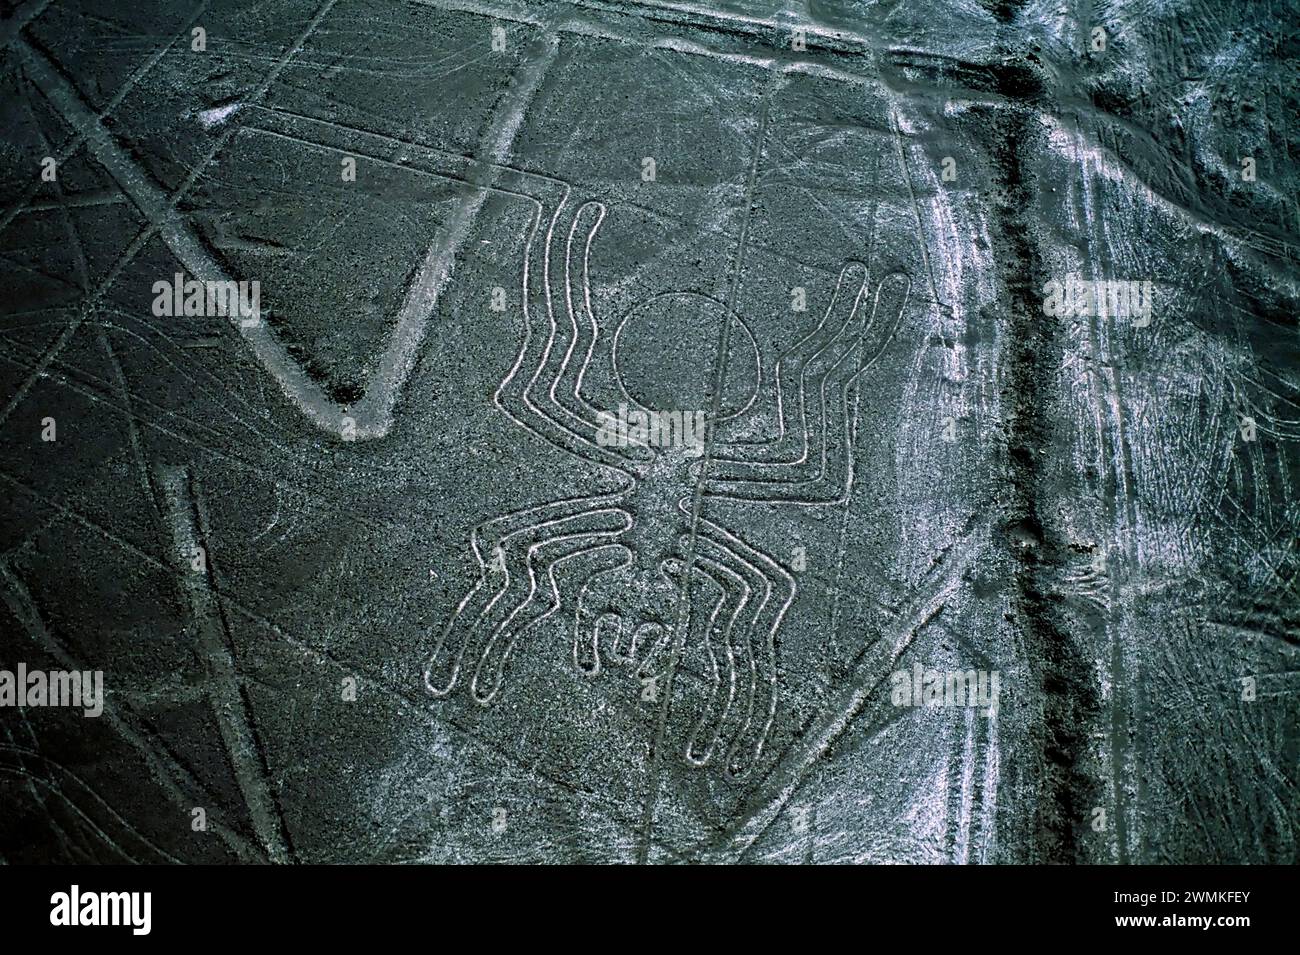 Geheimnisvolle Nazca-Linien bilden eine Spinne, eine von vielen tierischen und geometrischen Formen, die am besten in der Luft in Perus südlicher Wüste zu sehen sind. Anthropologen beli... Stockfoto